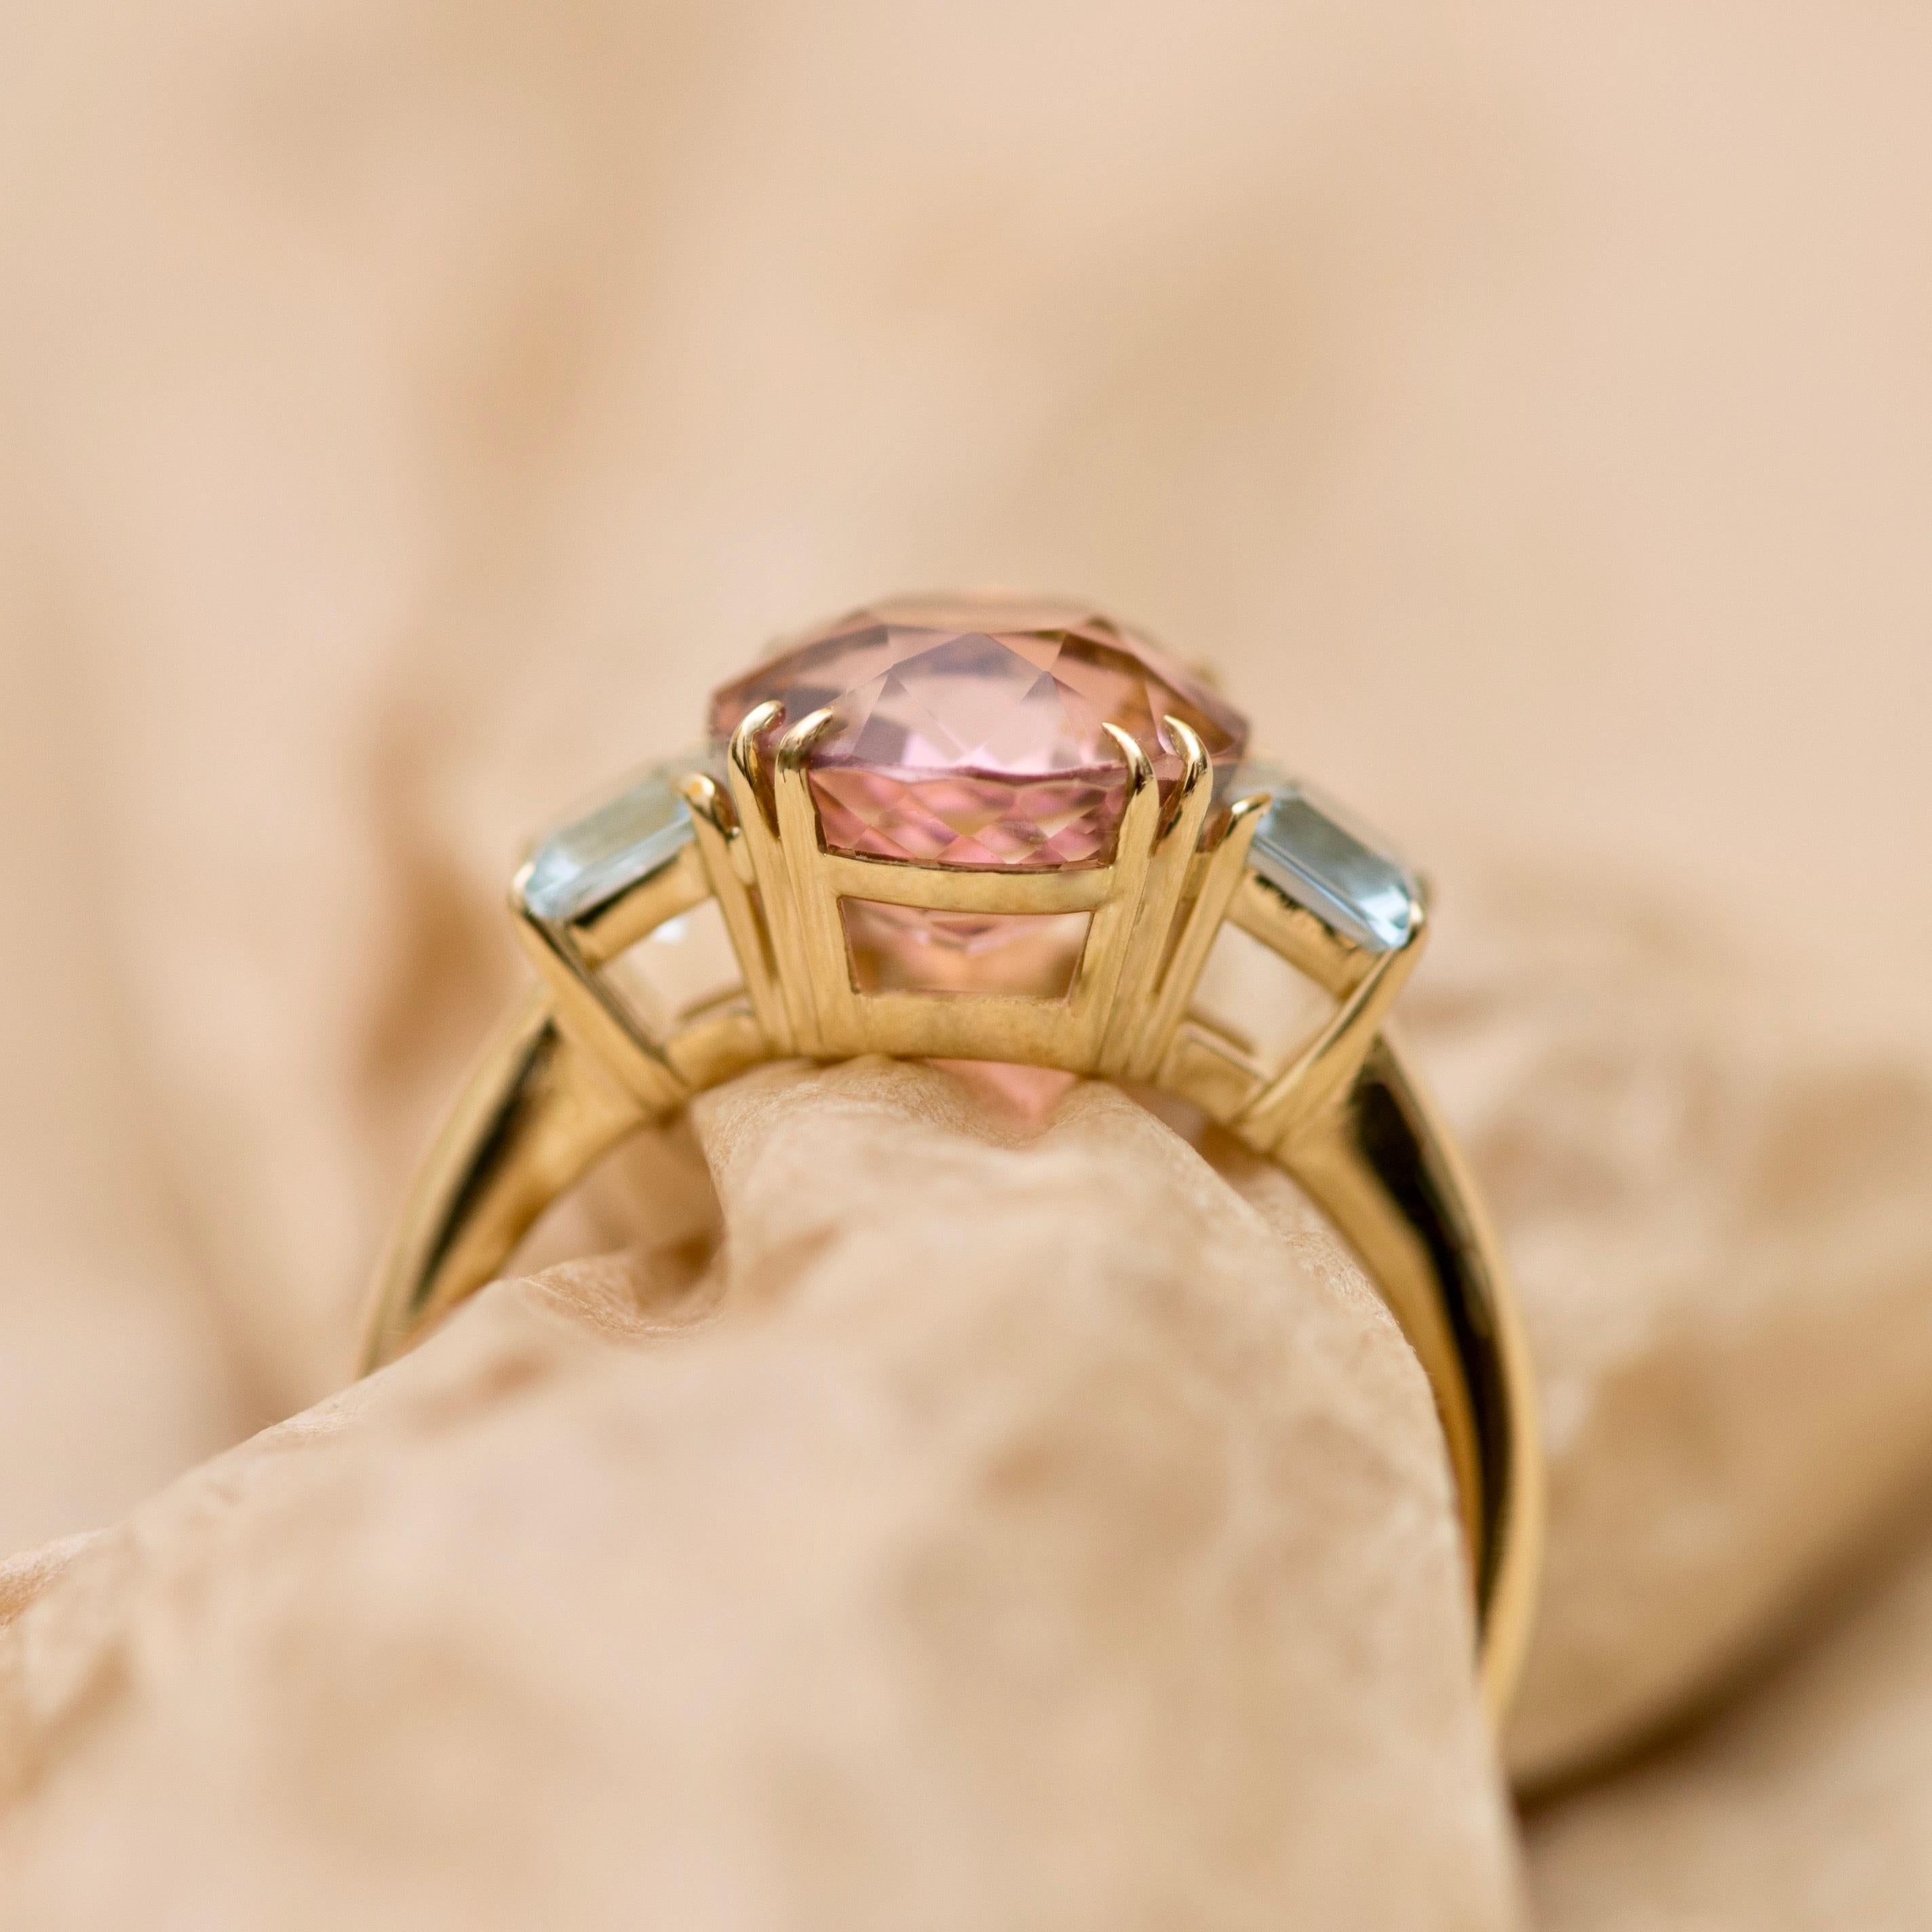 pink tourmaline and aquamarine ring